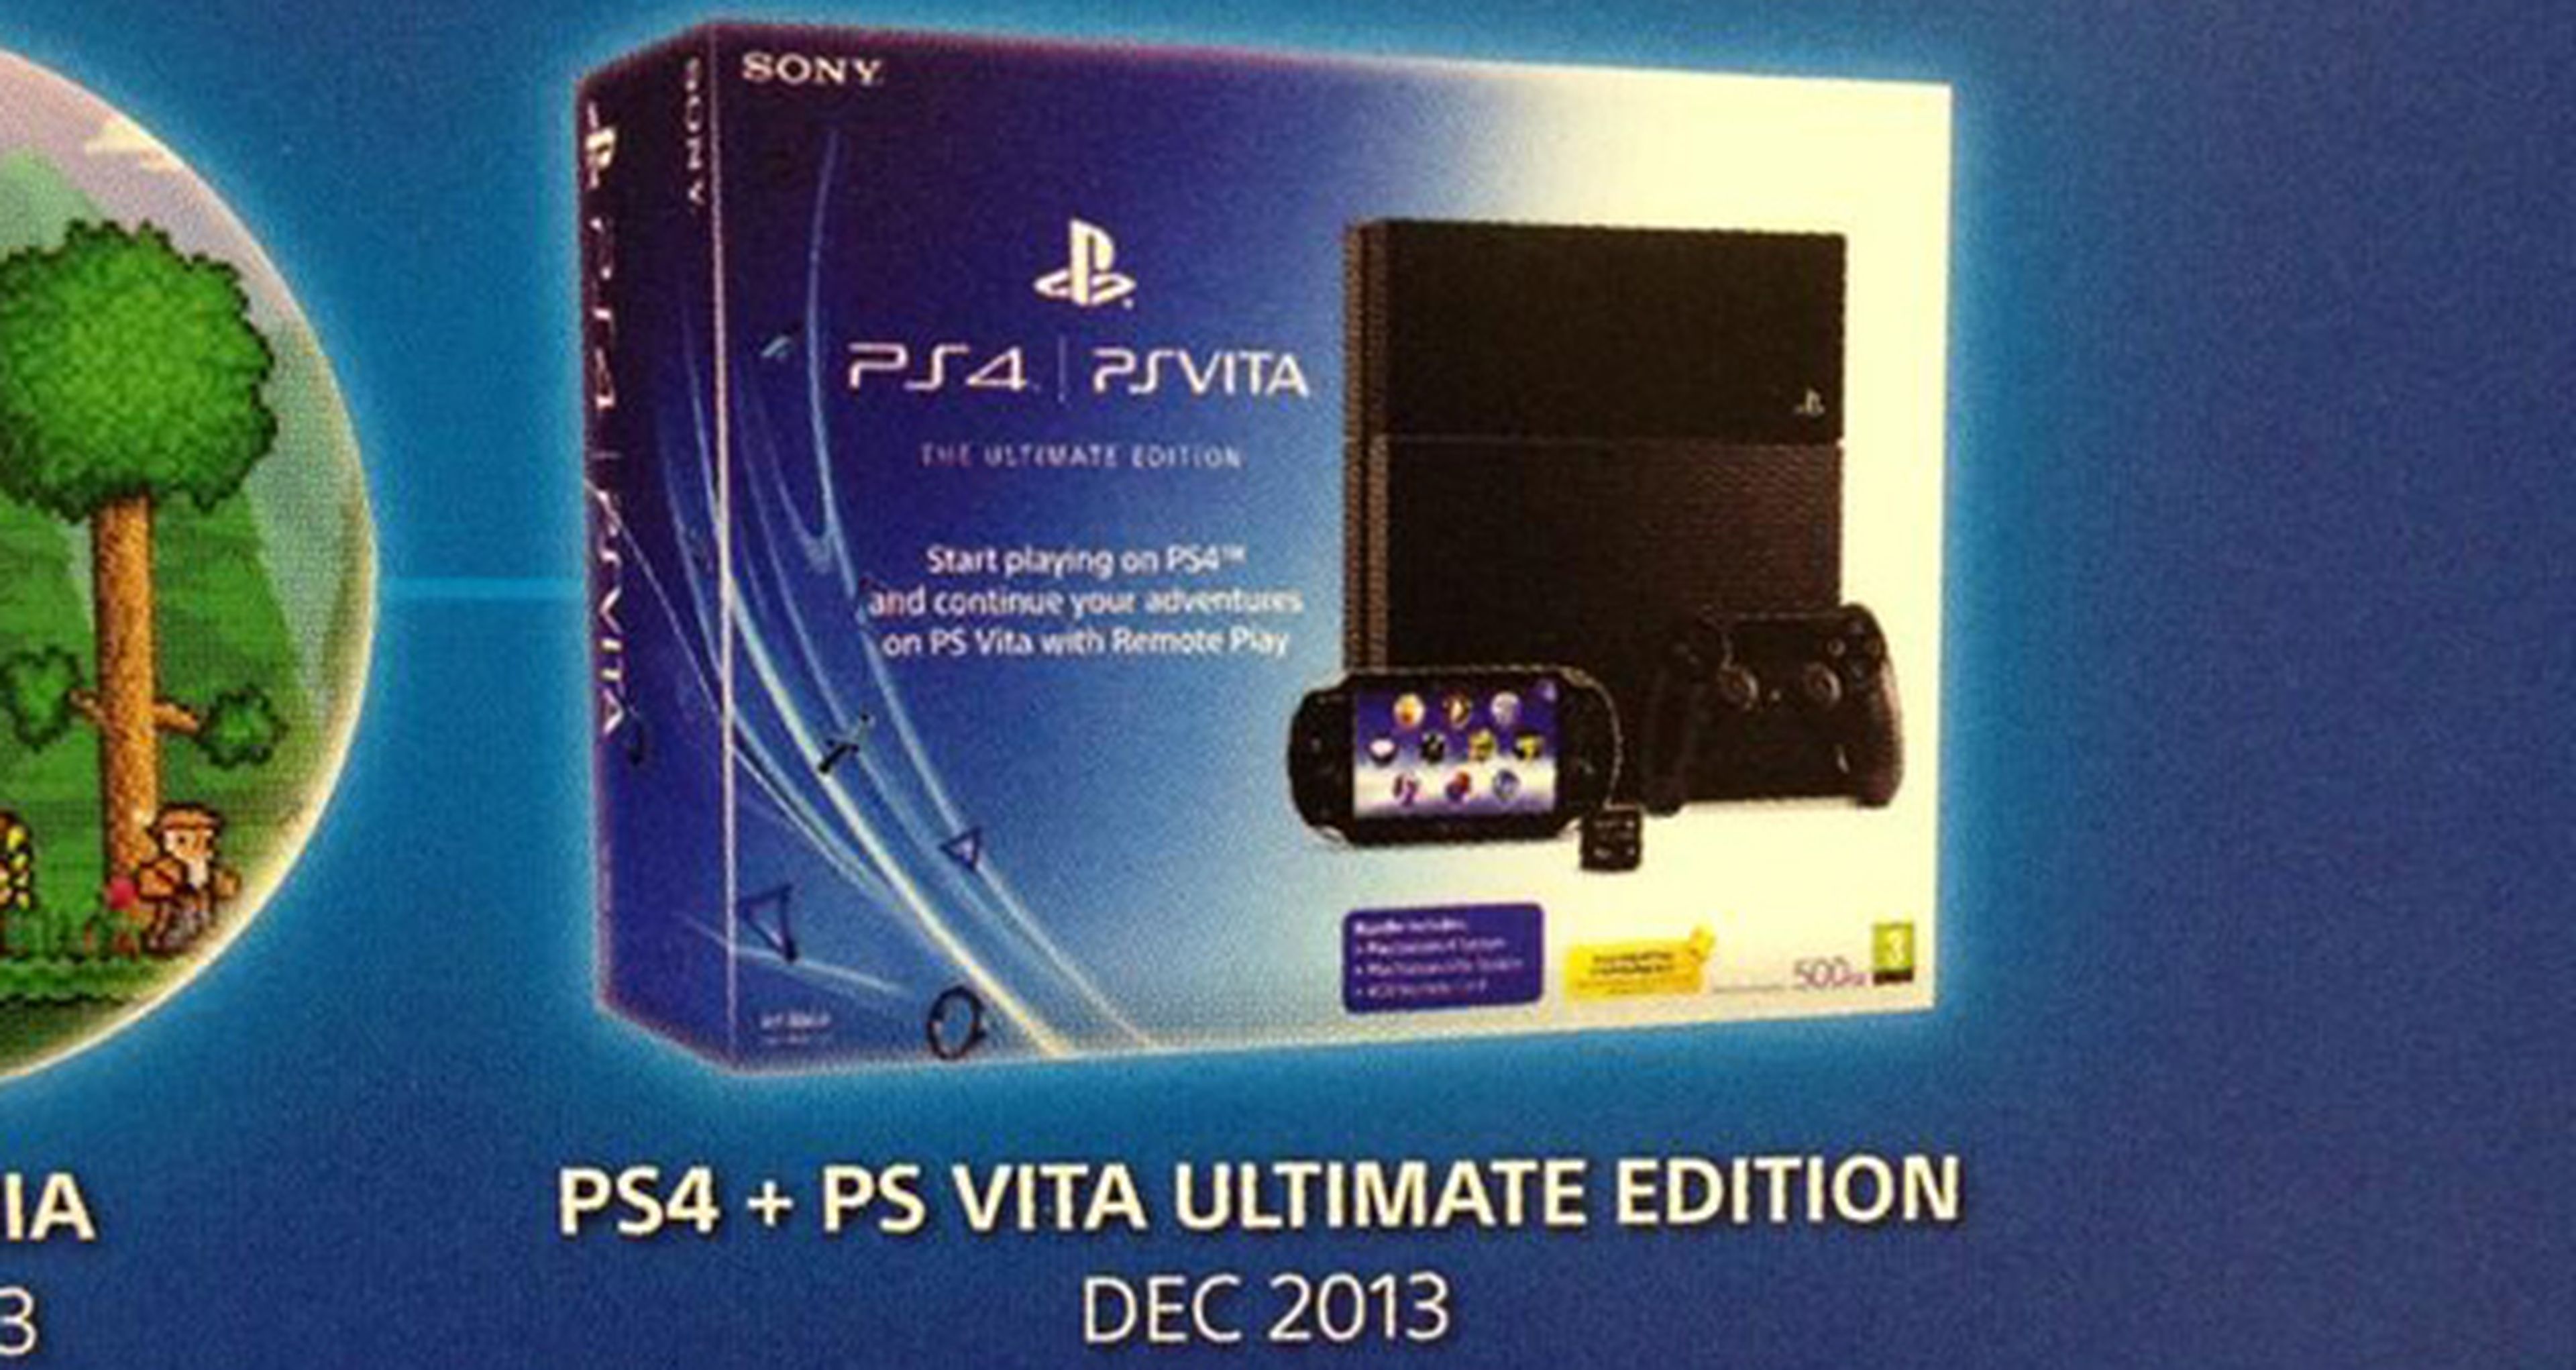 Pack de PS4 y PS Vita confirmado